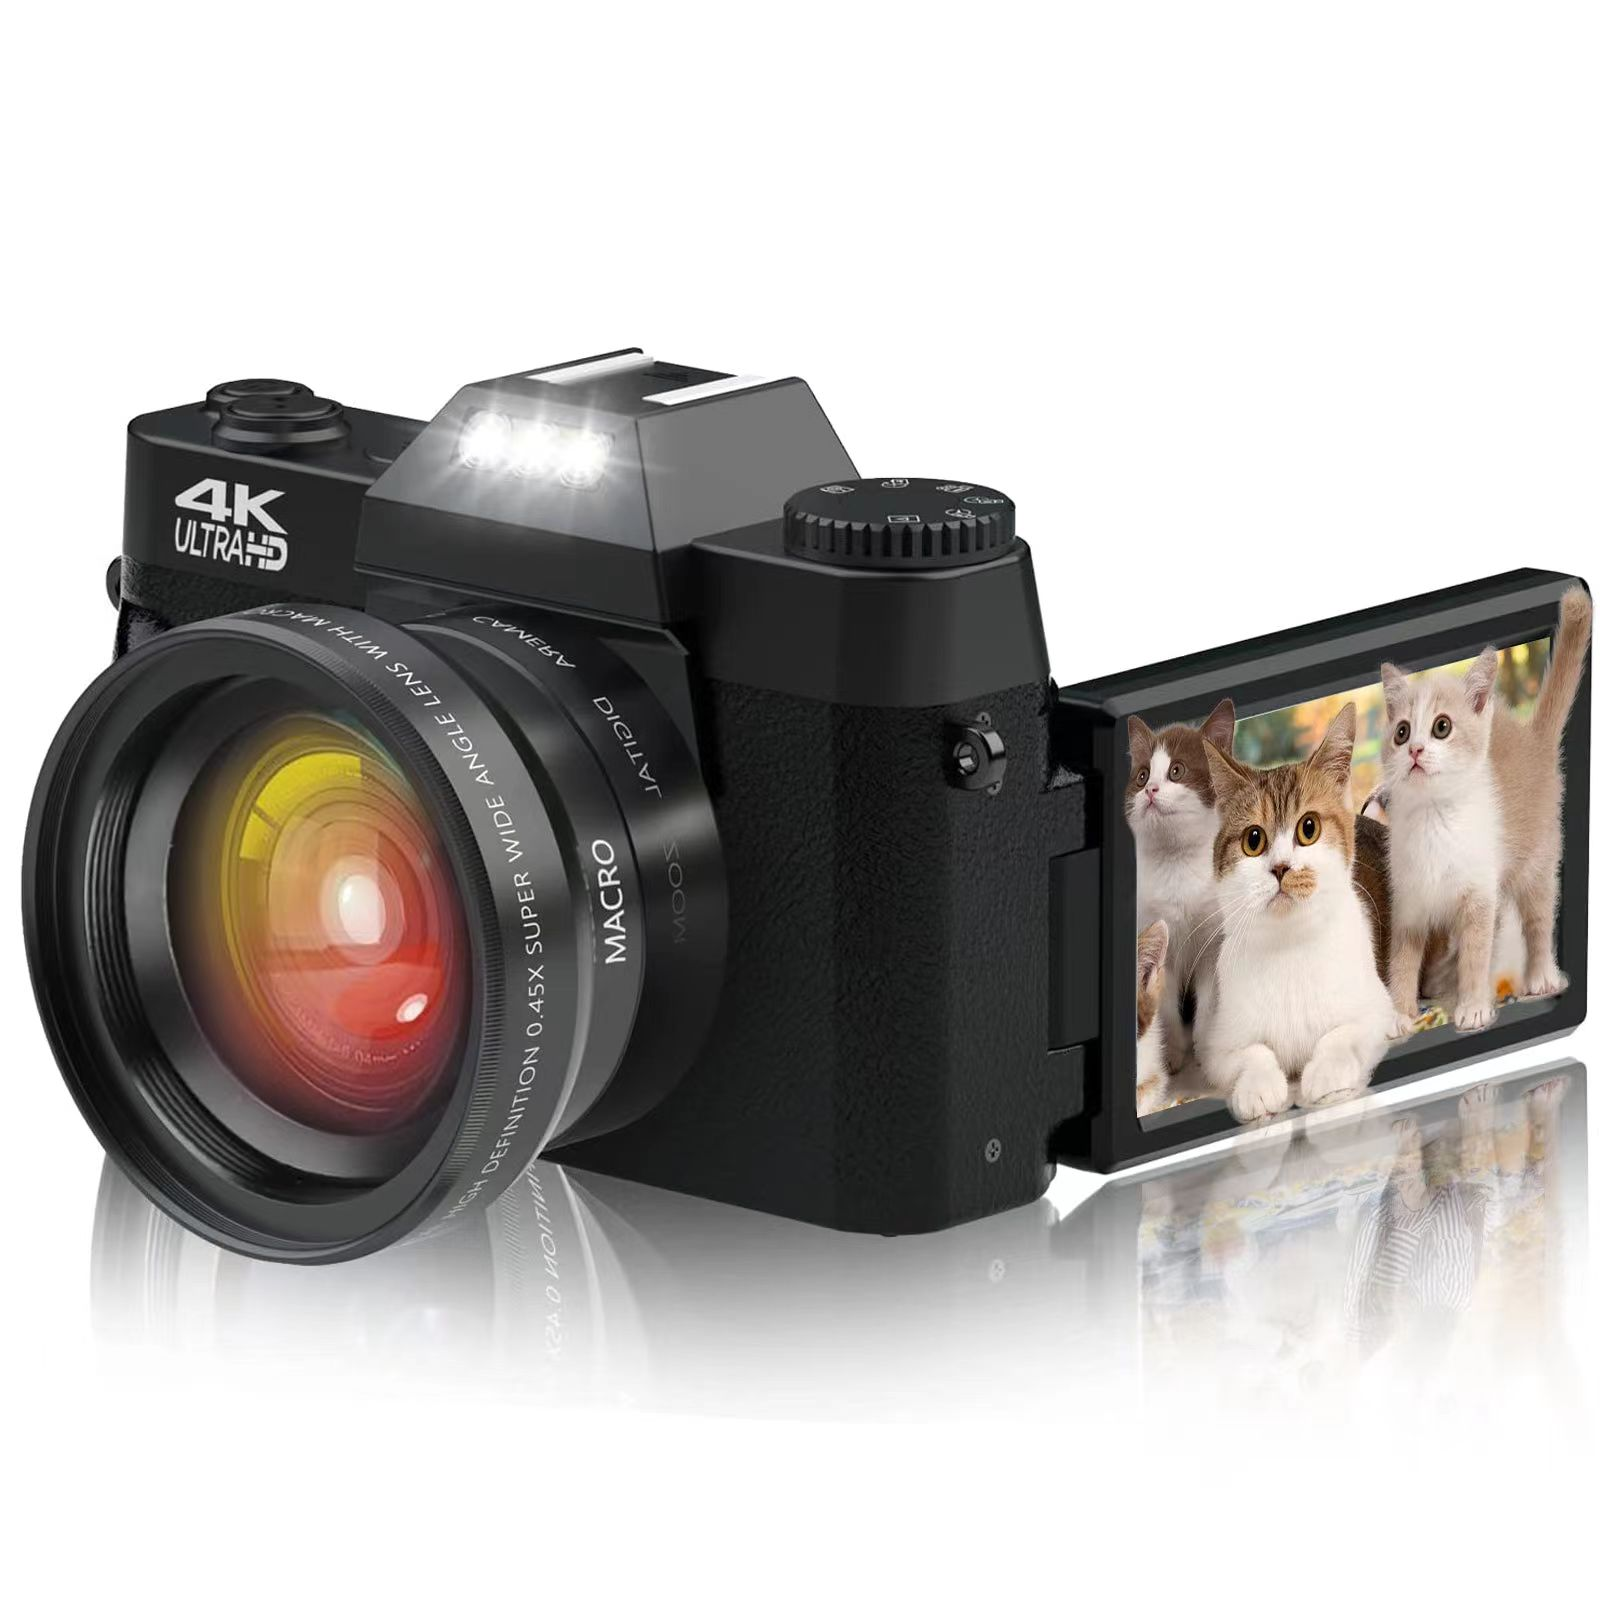 Kompaktkamera 64G kamera Digital der Einstiegsklasse LIFE 48 PRO FINE Speicherkarte, Schwarz mit MP Digitalkamera